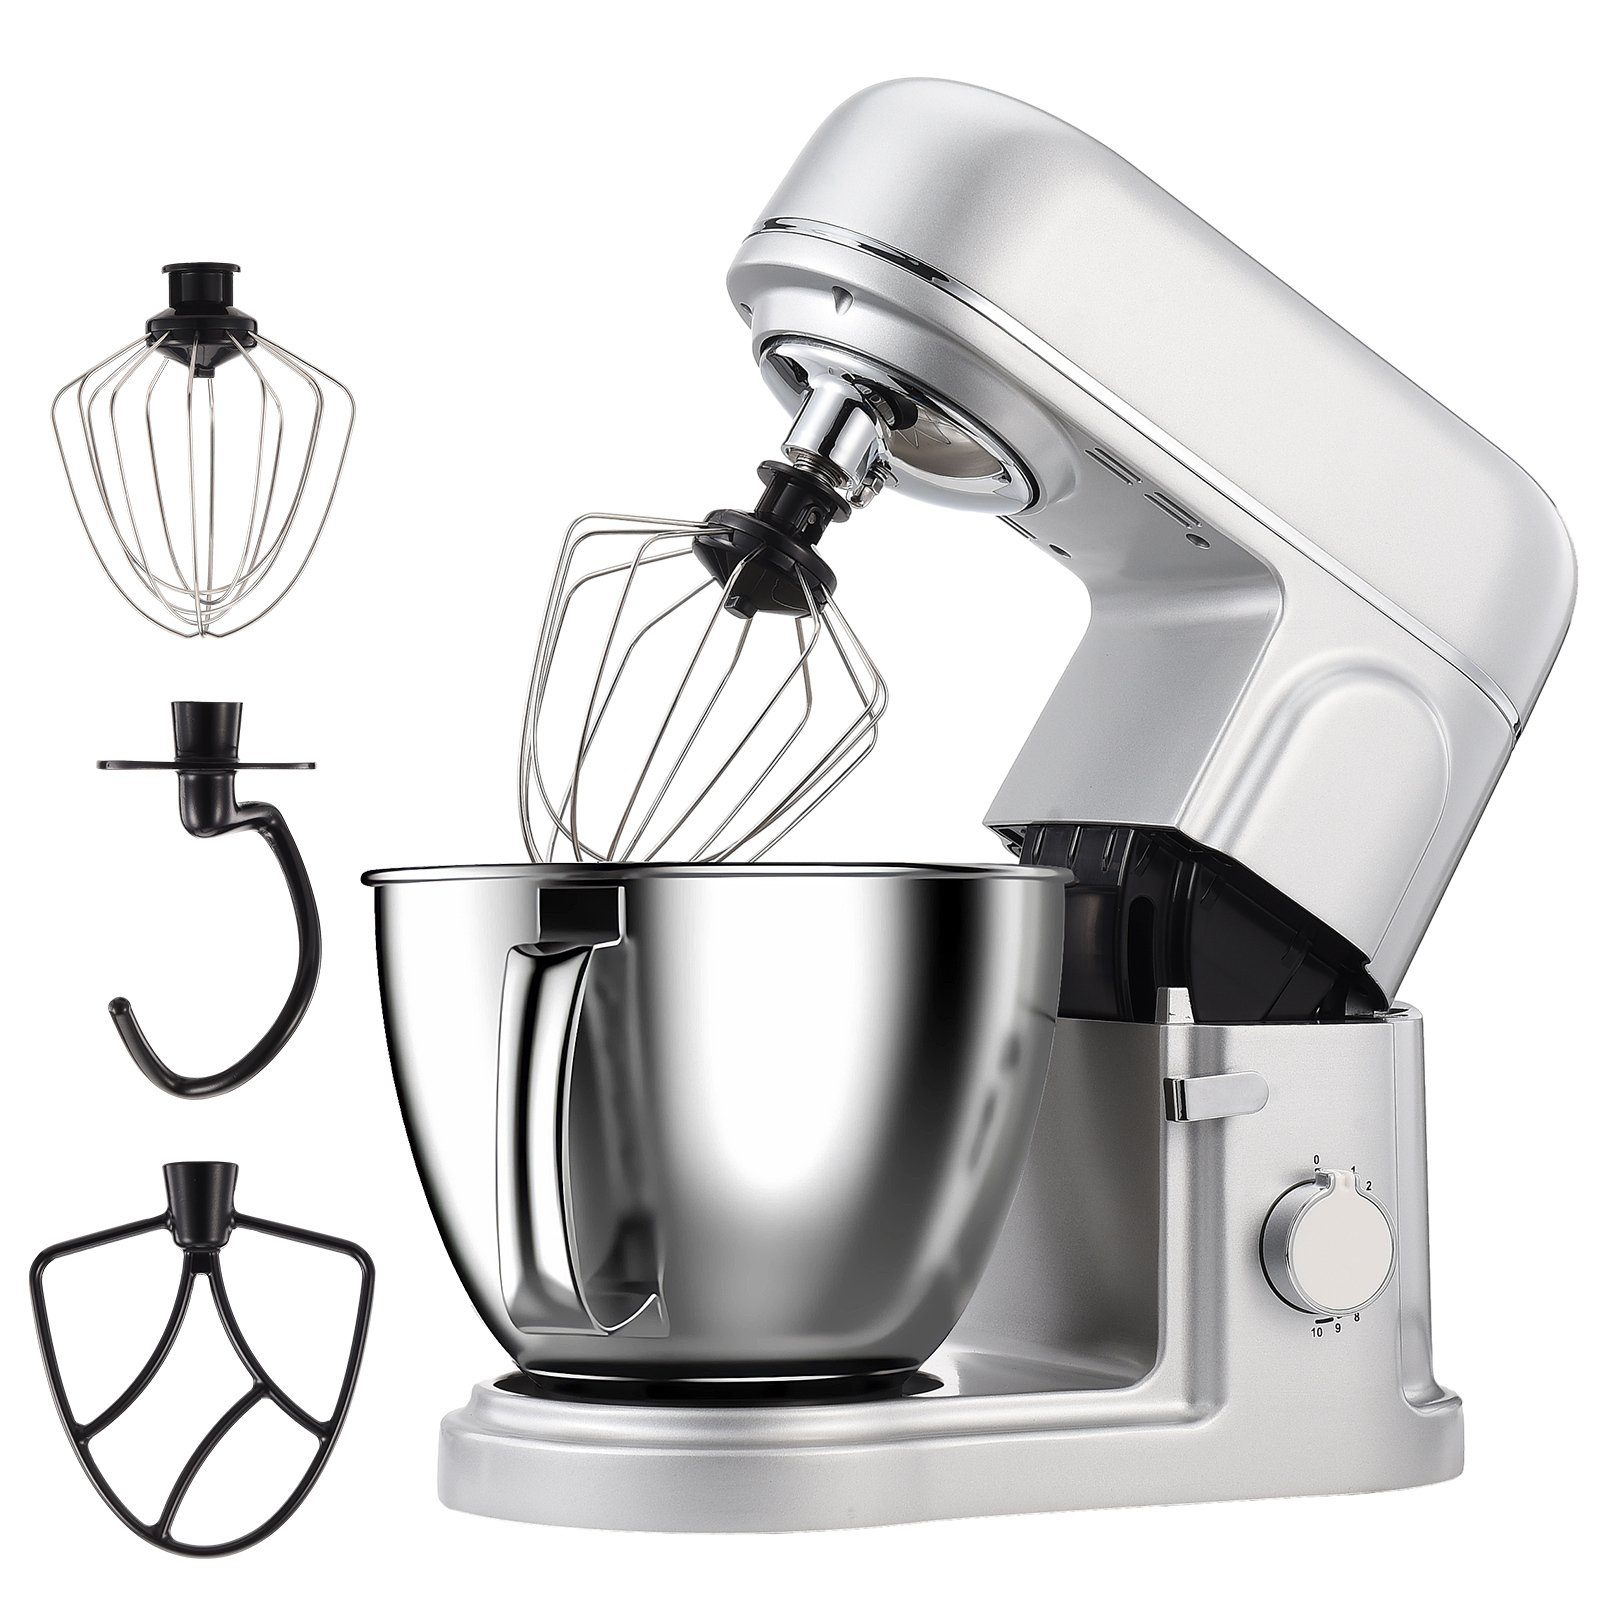 FUROKOY Küchenmaschine mit Kochfunktion Multifunktional Küchenmaschine Mixer Kleine Haushaltsgeräte Maschine Silber